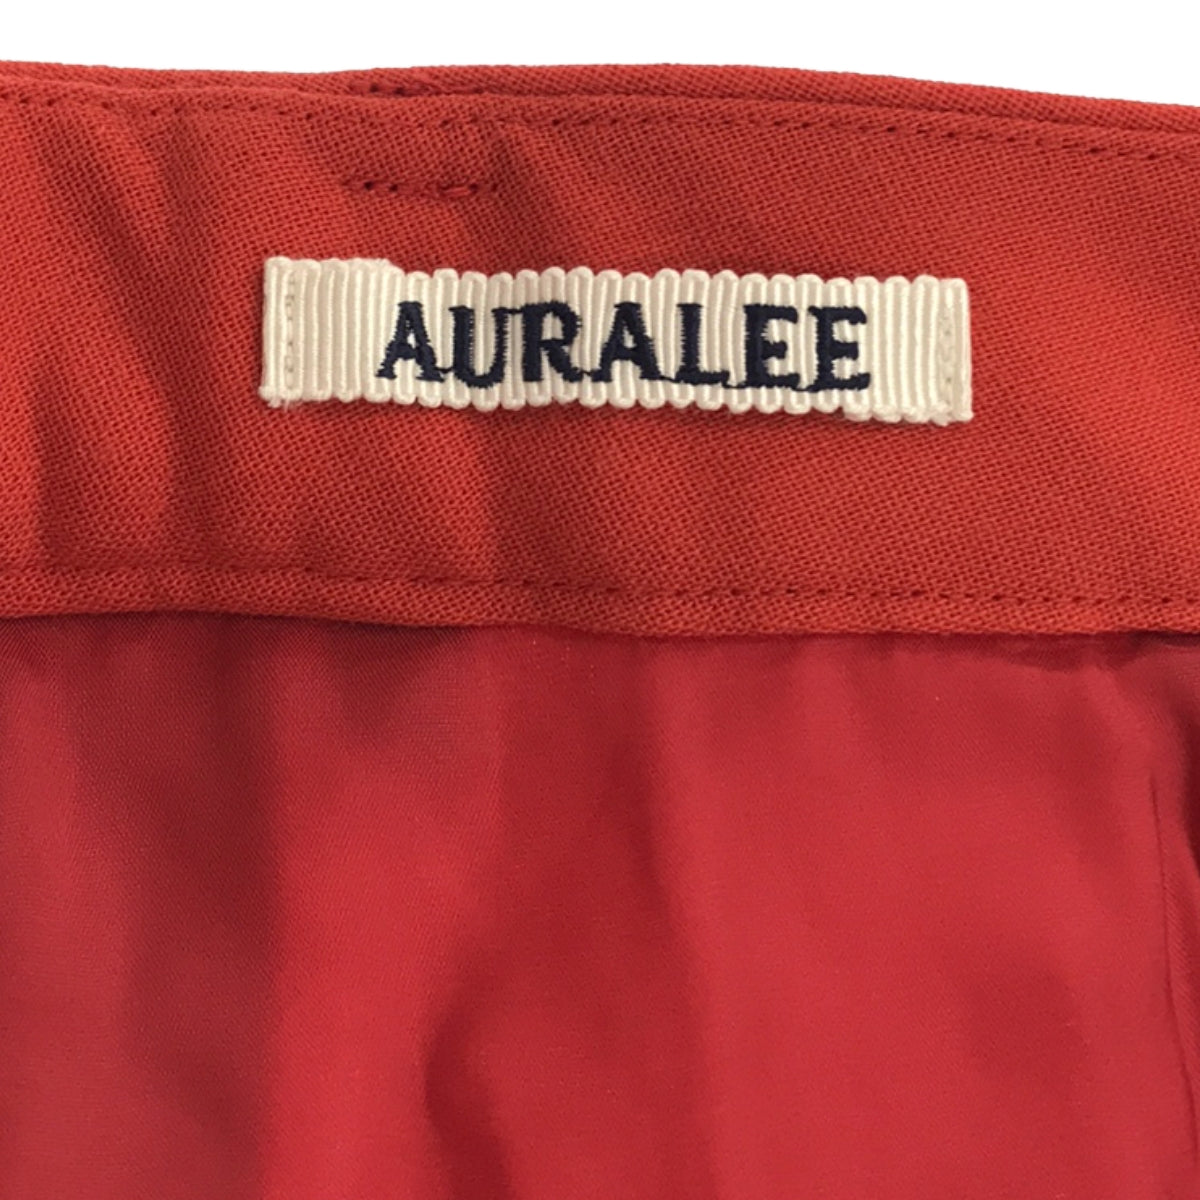 AURALEE / オーラリー | 2023AW | TENSE WOOL DOUBLE CLOTH SLACKS / テンスウール ダブルクロス スラックス パンツ | 0 | レディース